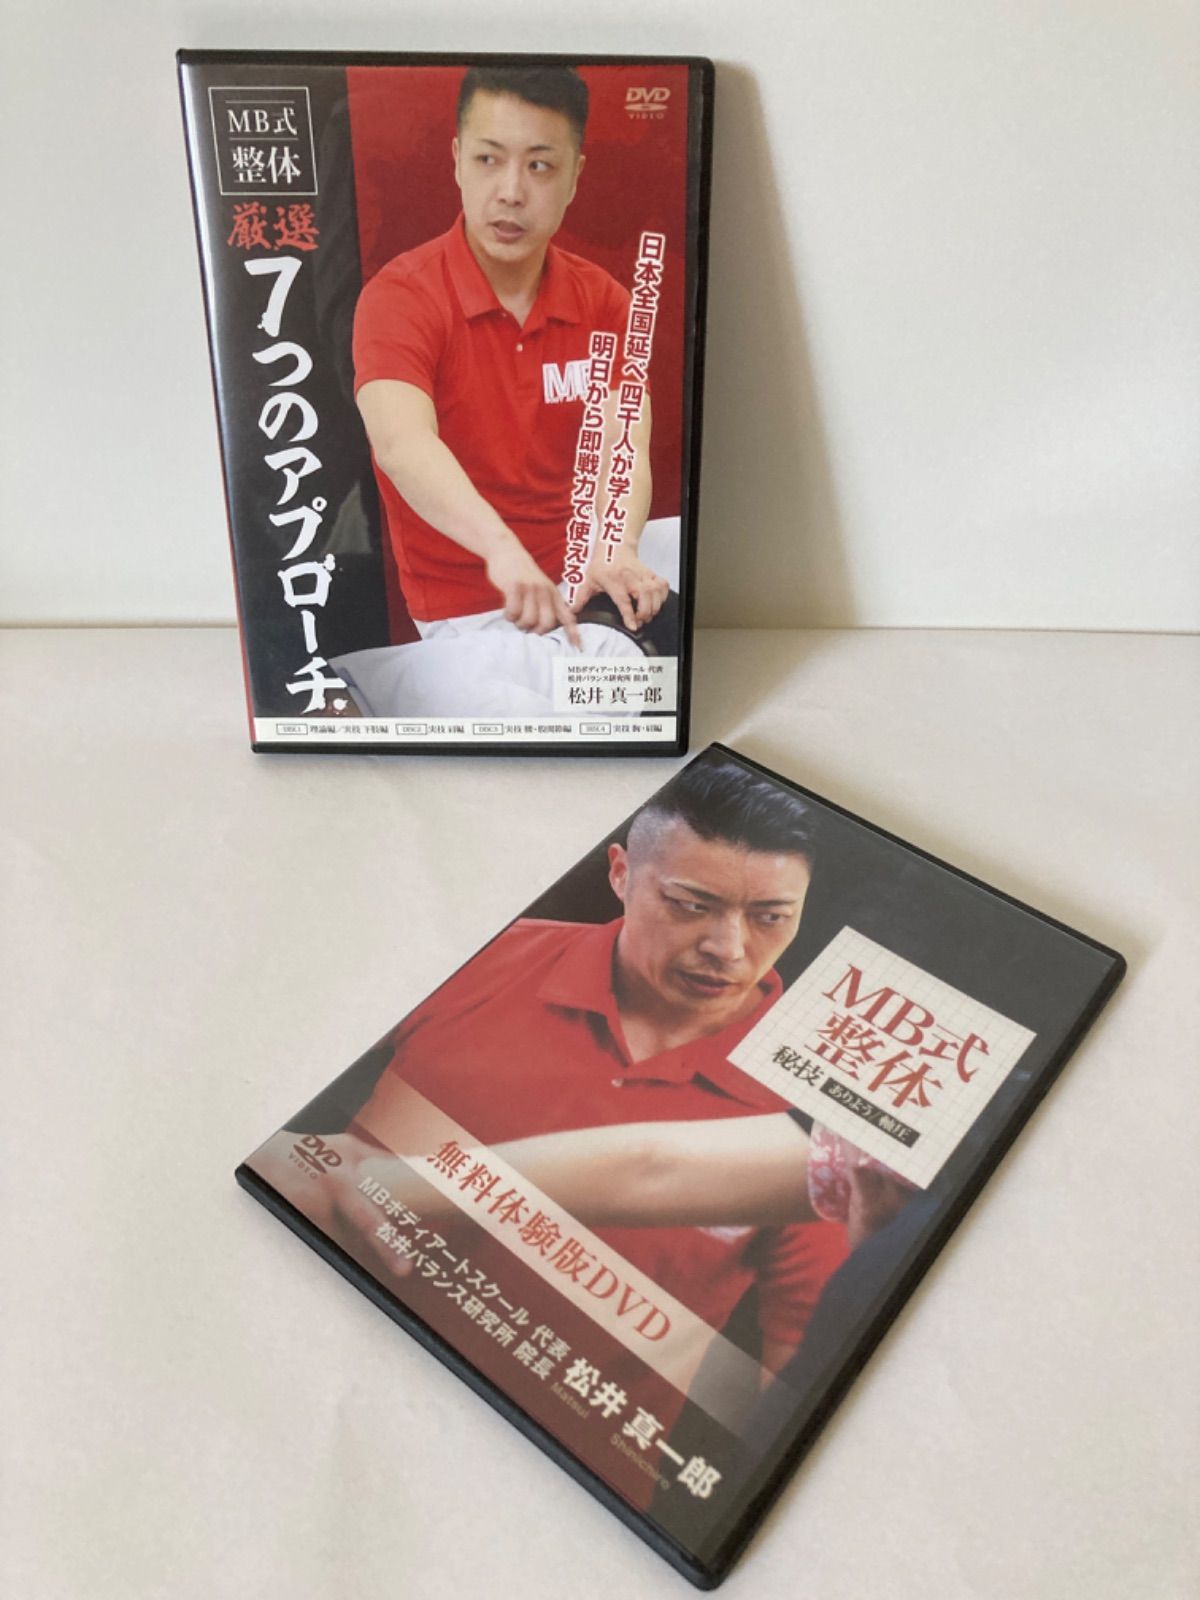 MB式整体 嚴選 「7つのアプローチ」「秘技ありよう」DVDセット - Shop